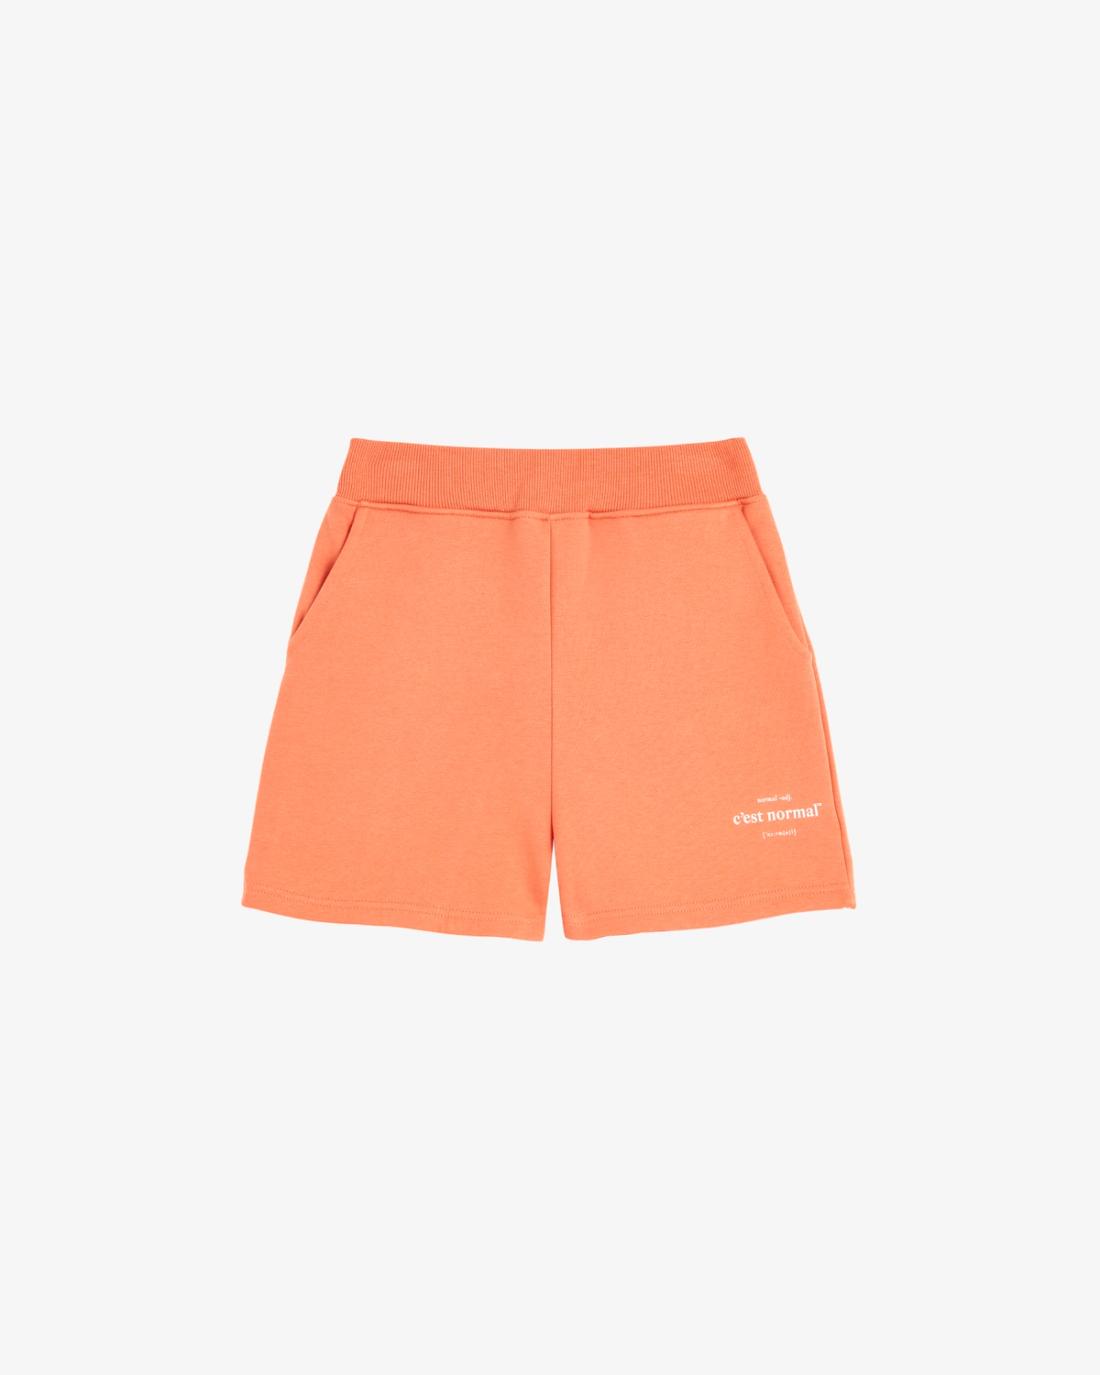 The Basic shorts 2.0